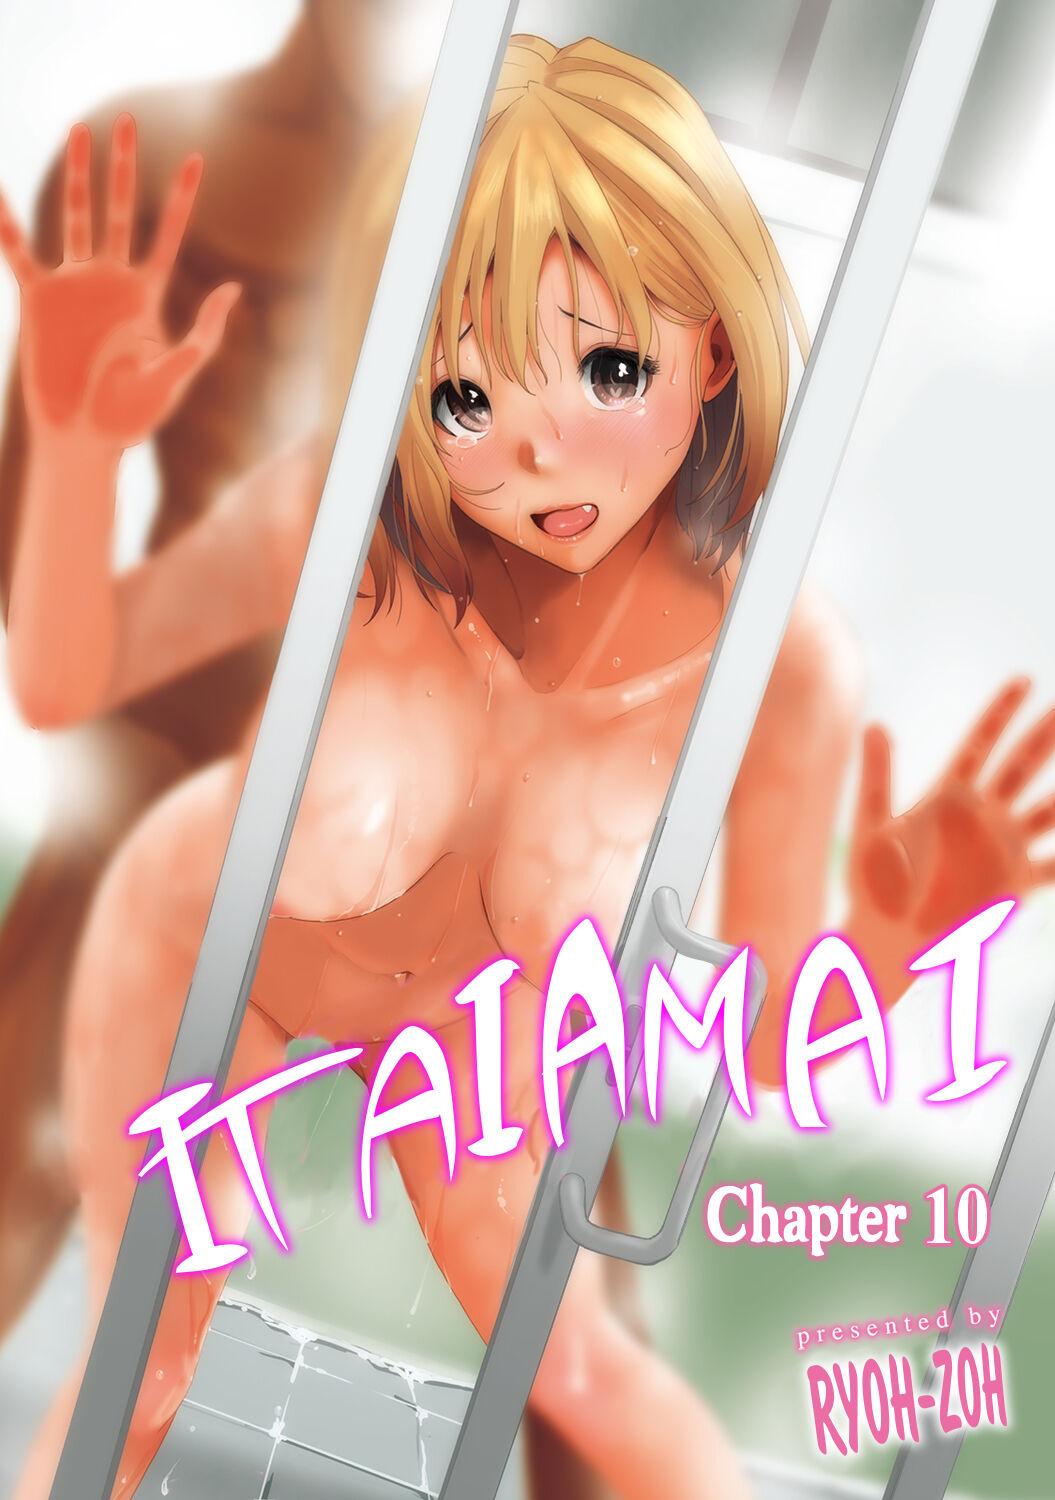 19yo Itaiamai Ch. 10 Fake - Picture 1